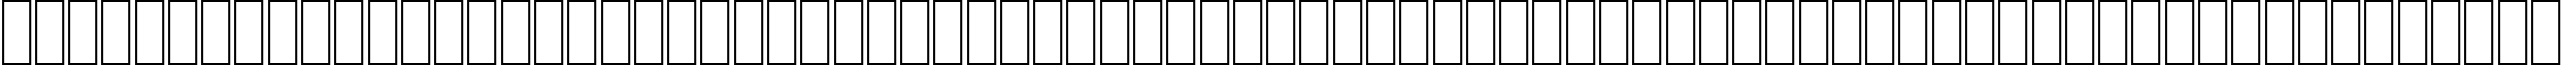 Пример написания английского алфавита шрифтом AGA Cordoba Regular